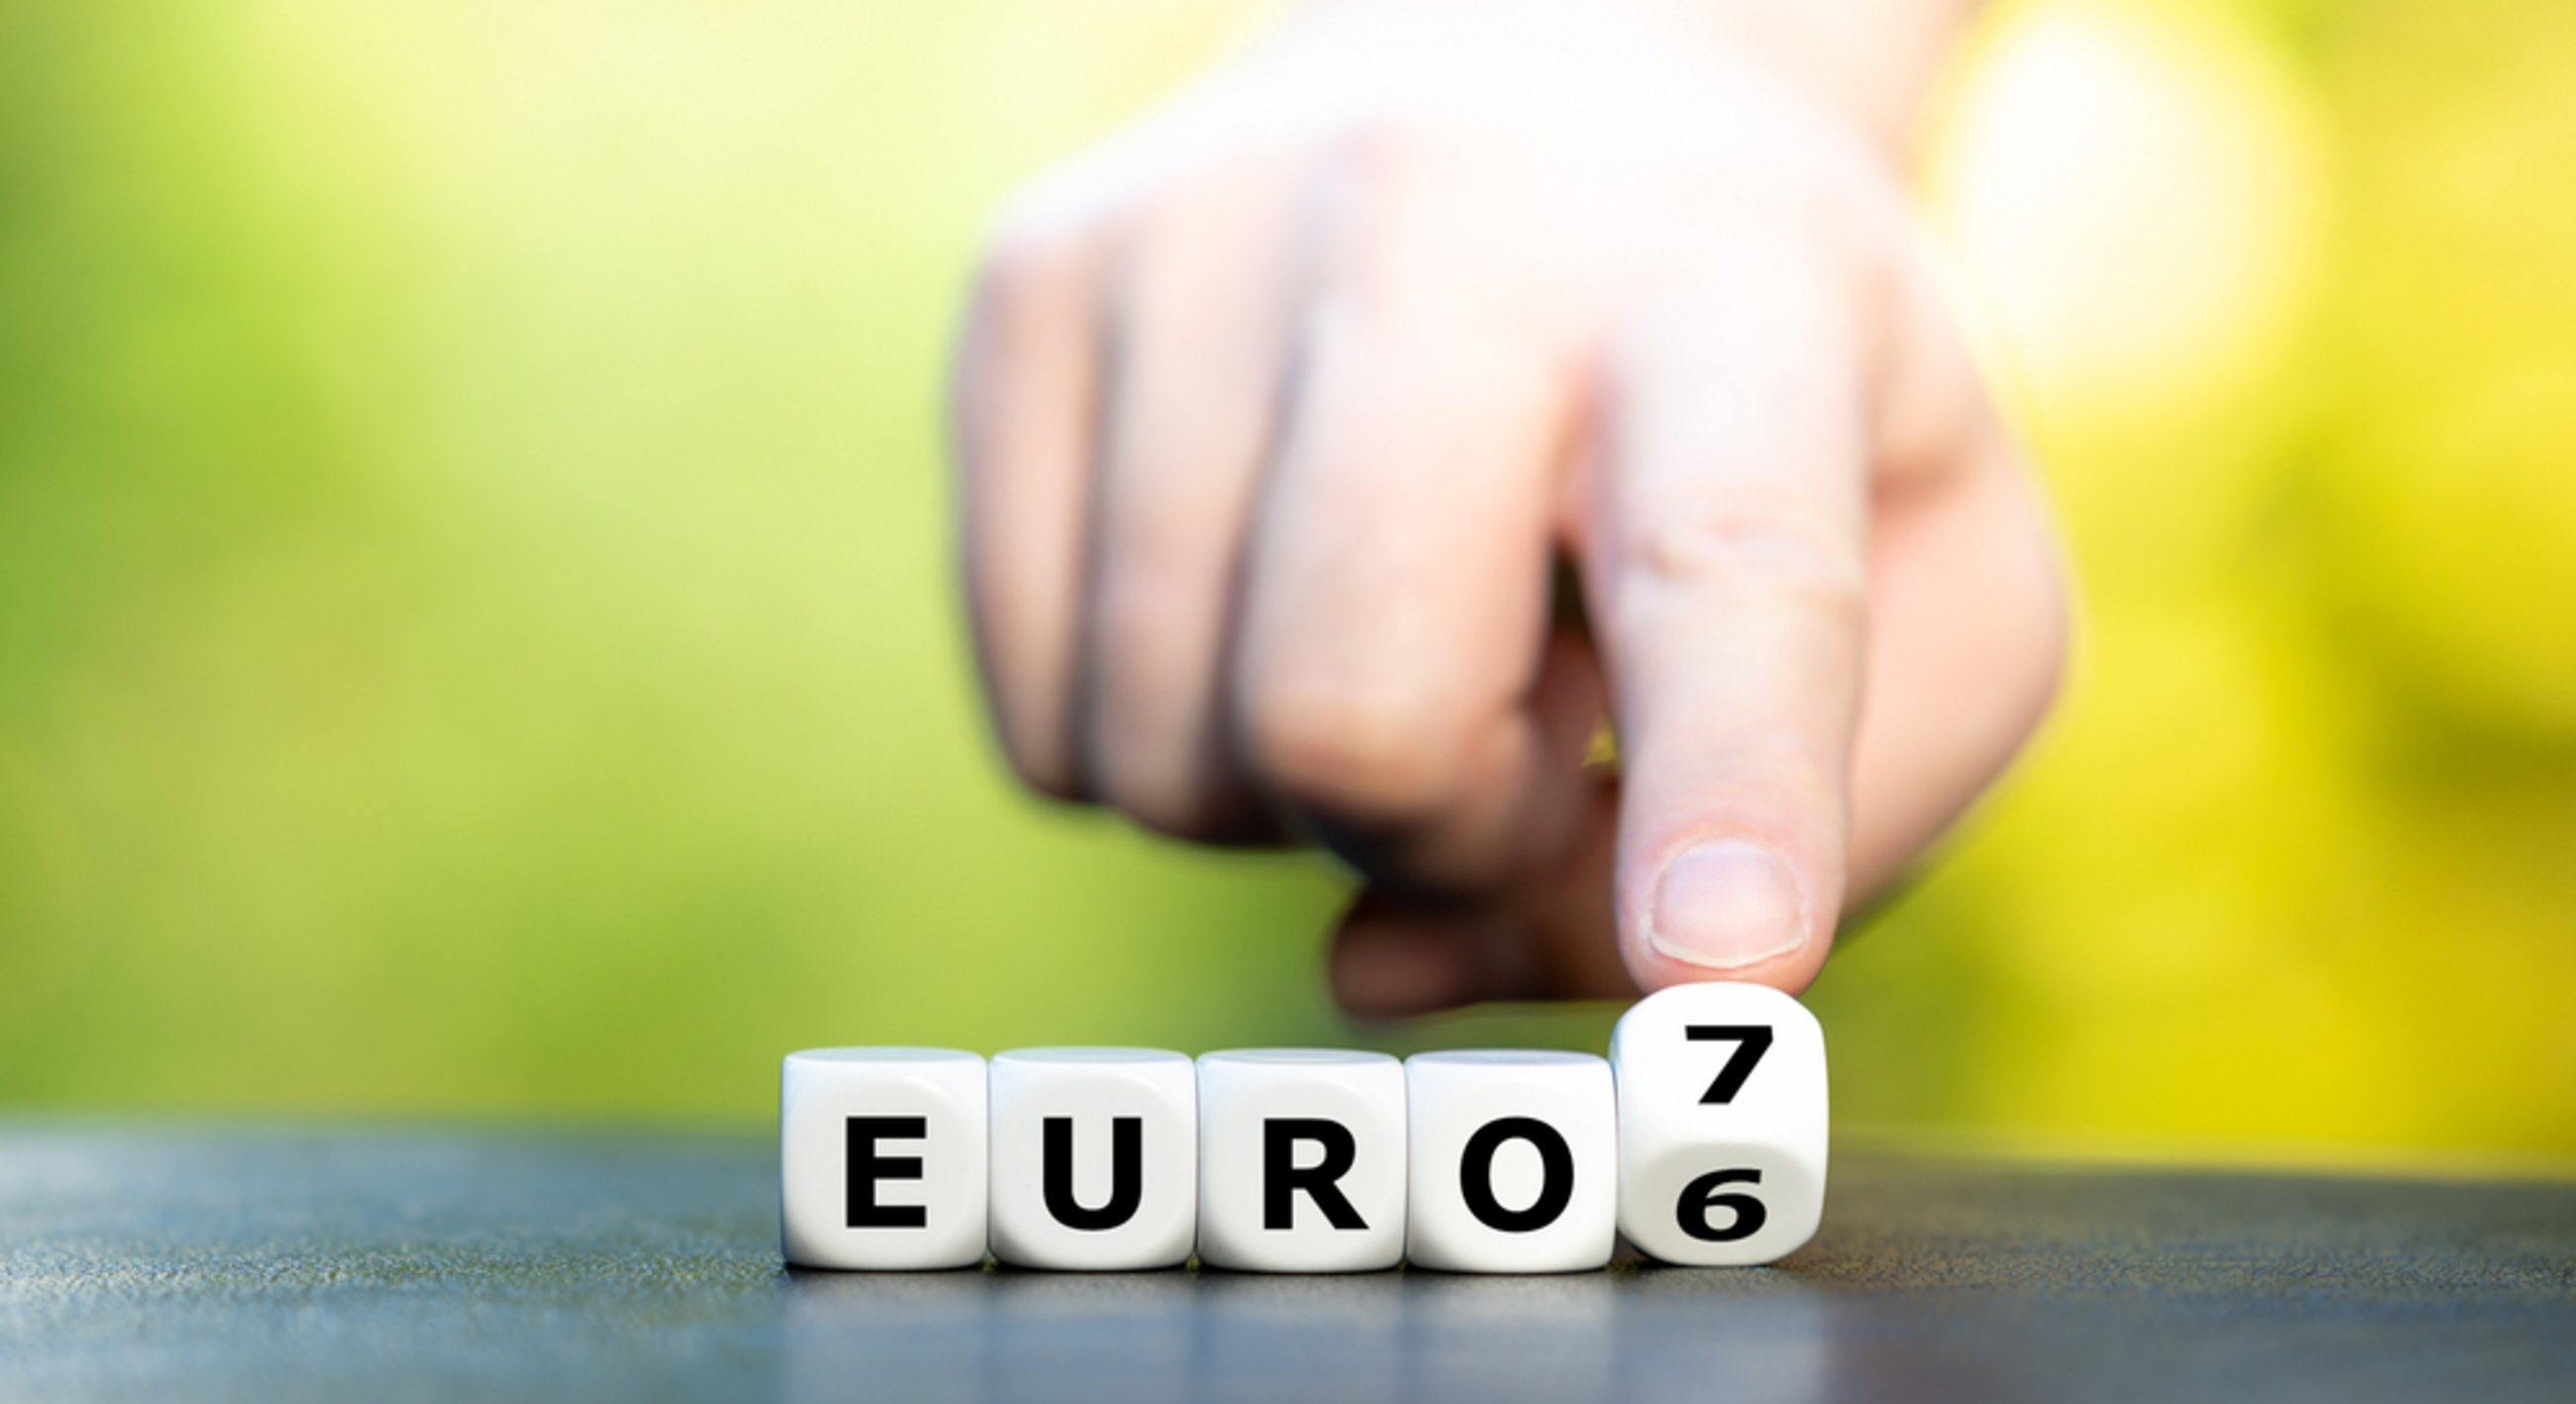 Euro-7-Emissionsgrenzwerte für Kraftfahrzeuge (cepAnalyse zu COM(2022) 586)